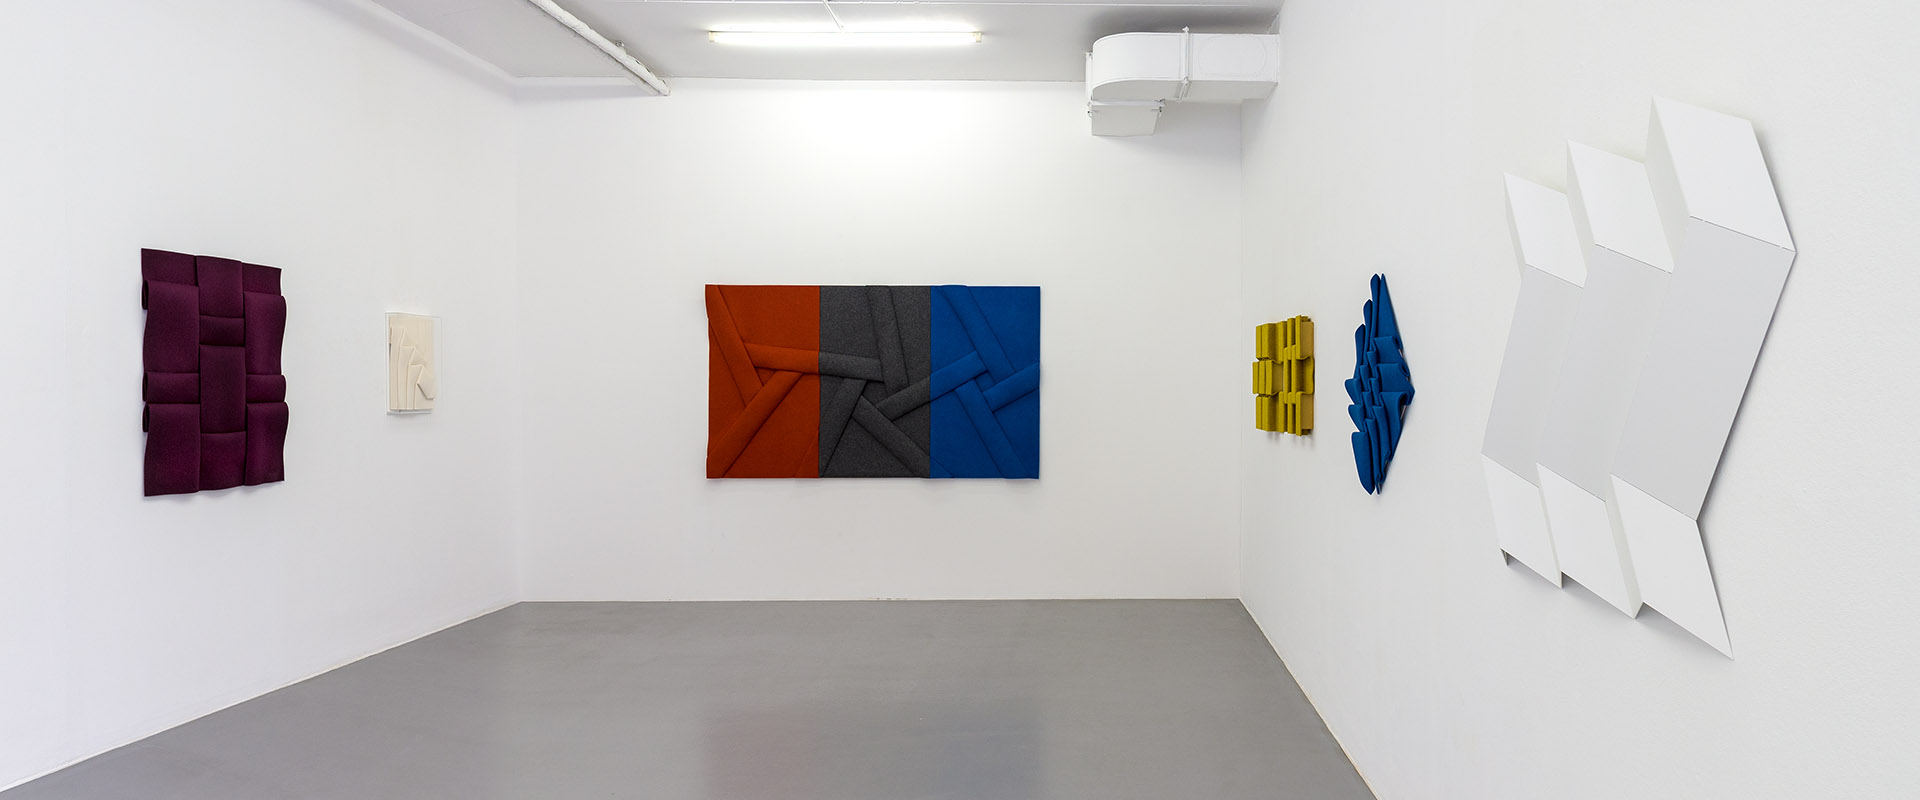 Ausstellungsansicht "Peter Weber - Struktur und Faltung", Galerie Renate Bender 2019